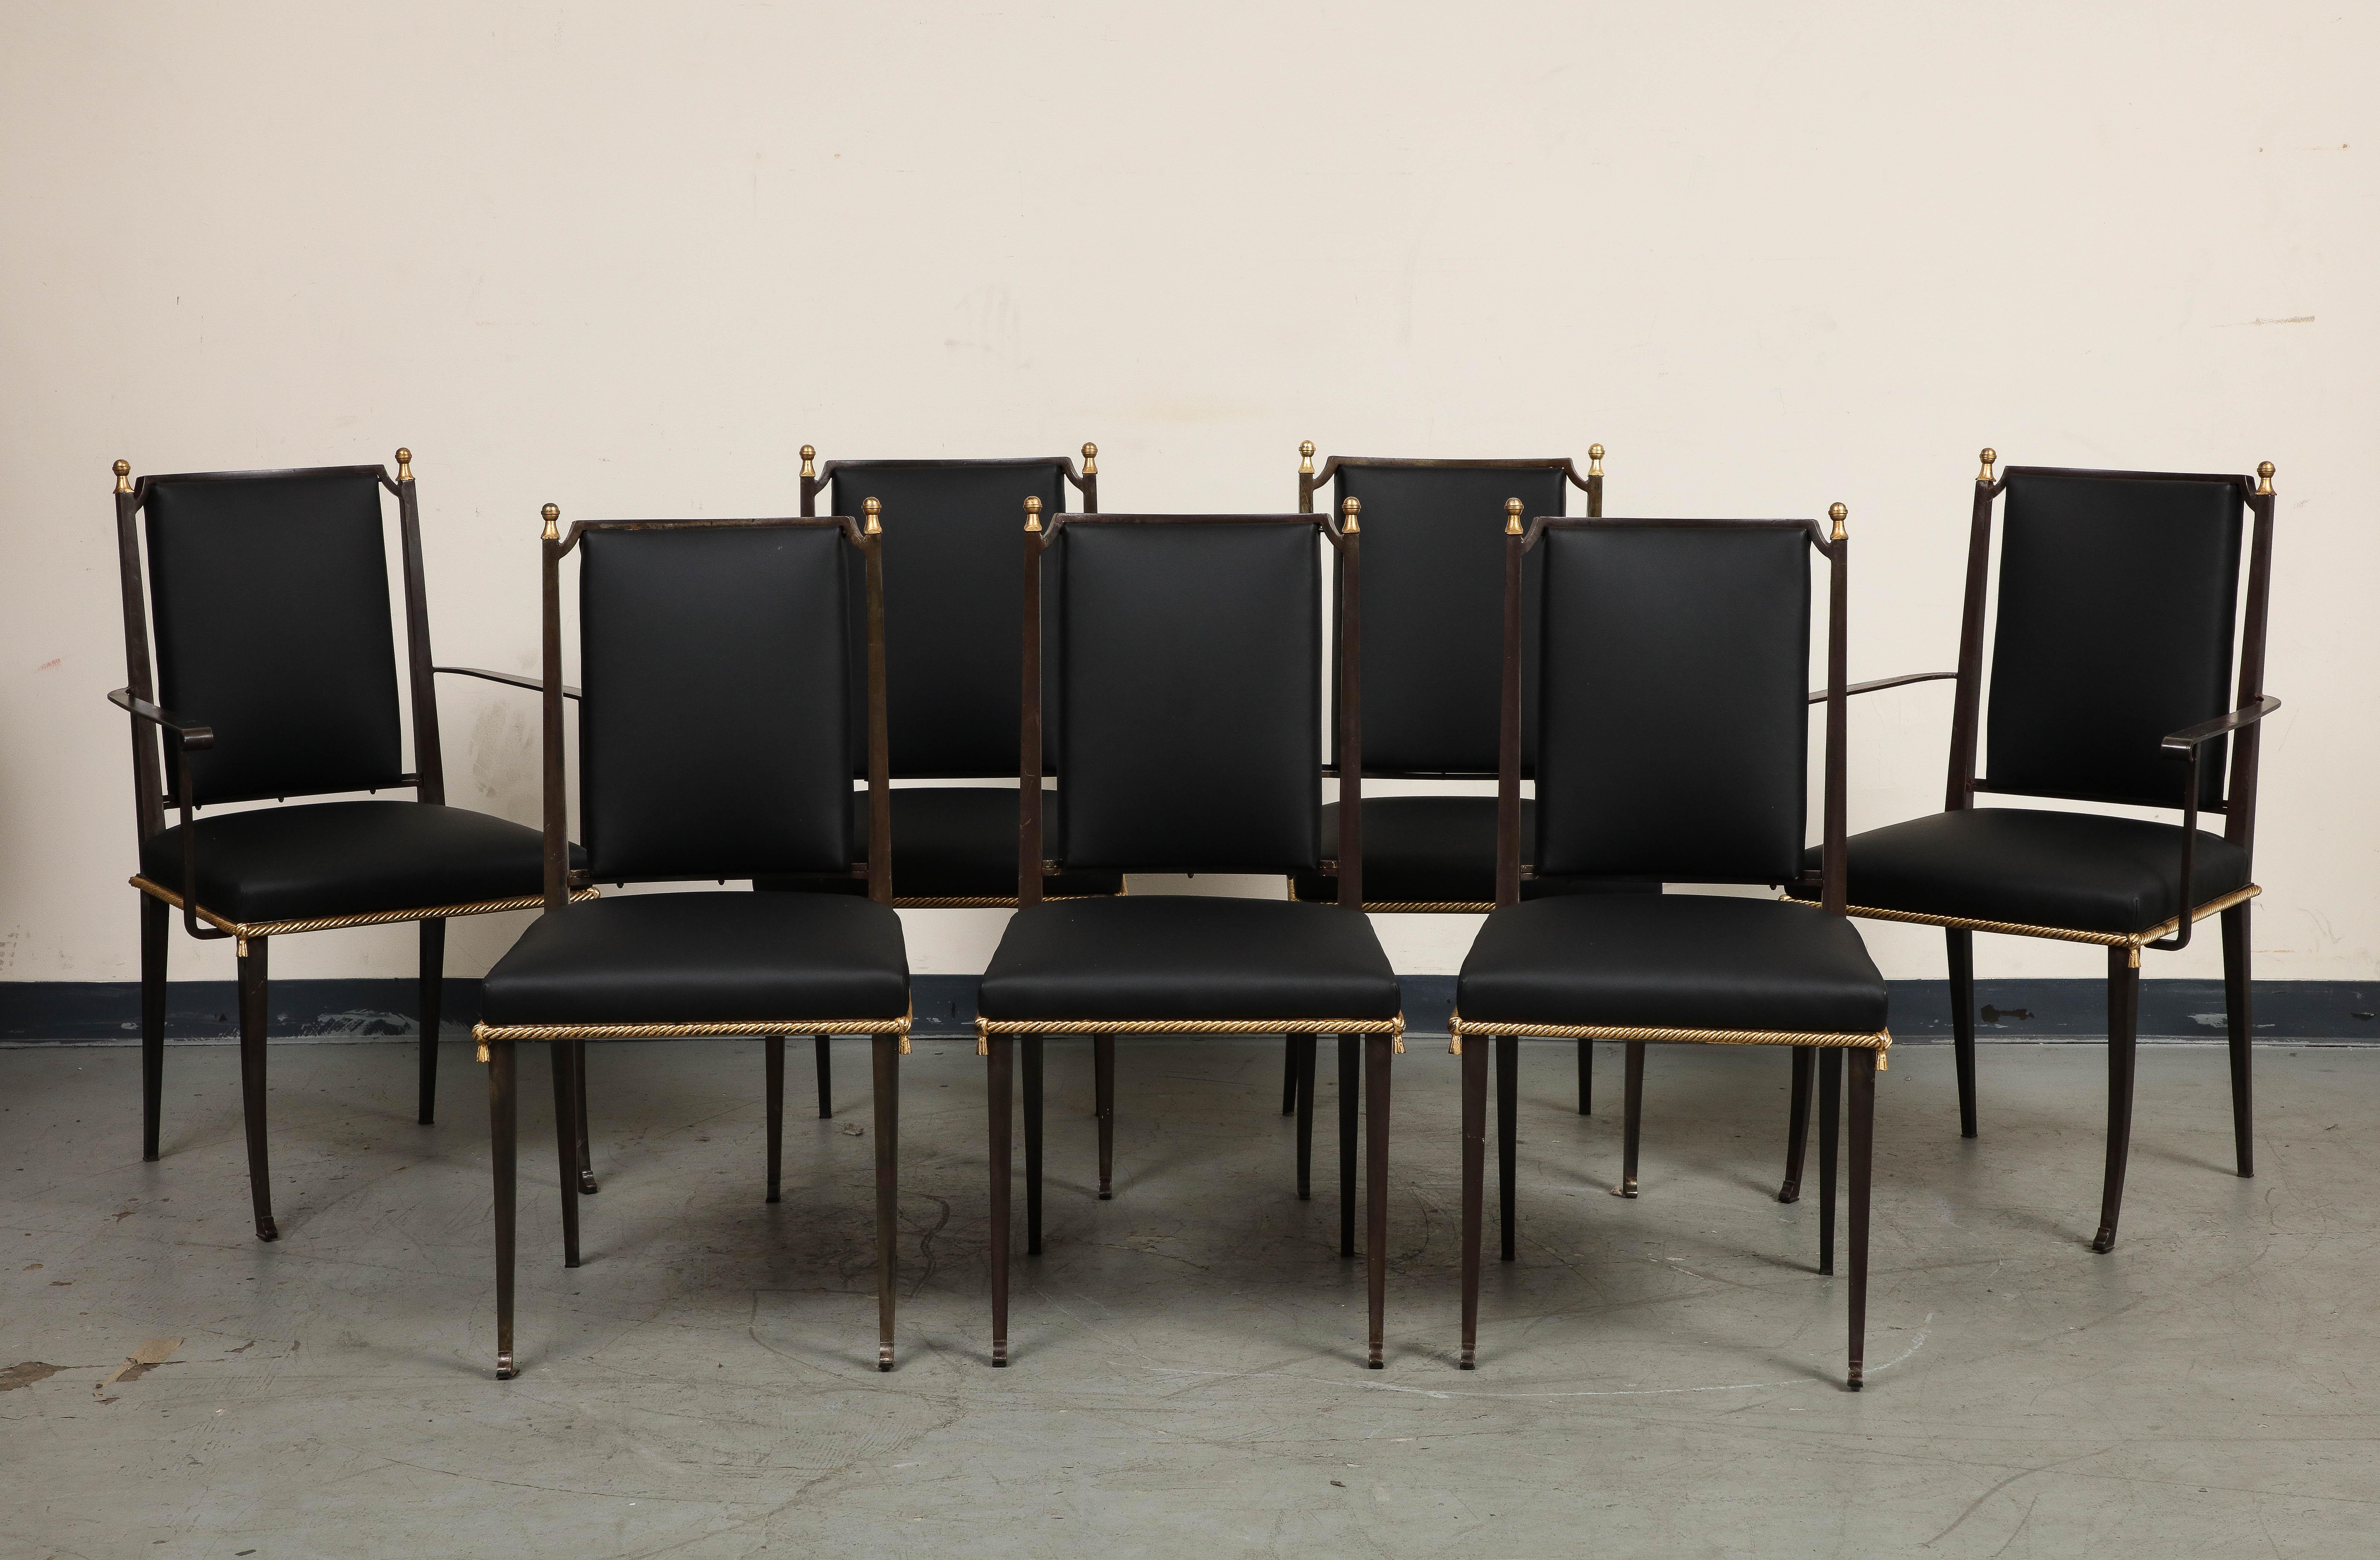 Ensemble de 7 chaises de salle à manger françaises du milieu du siècle avec des cadres en fer noirci et un nouveau revêtement en cuir noir. Les éléments dorés comprennent une garniture en forme de corde autour de l'assise, le bouton au centre du